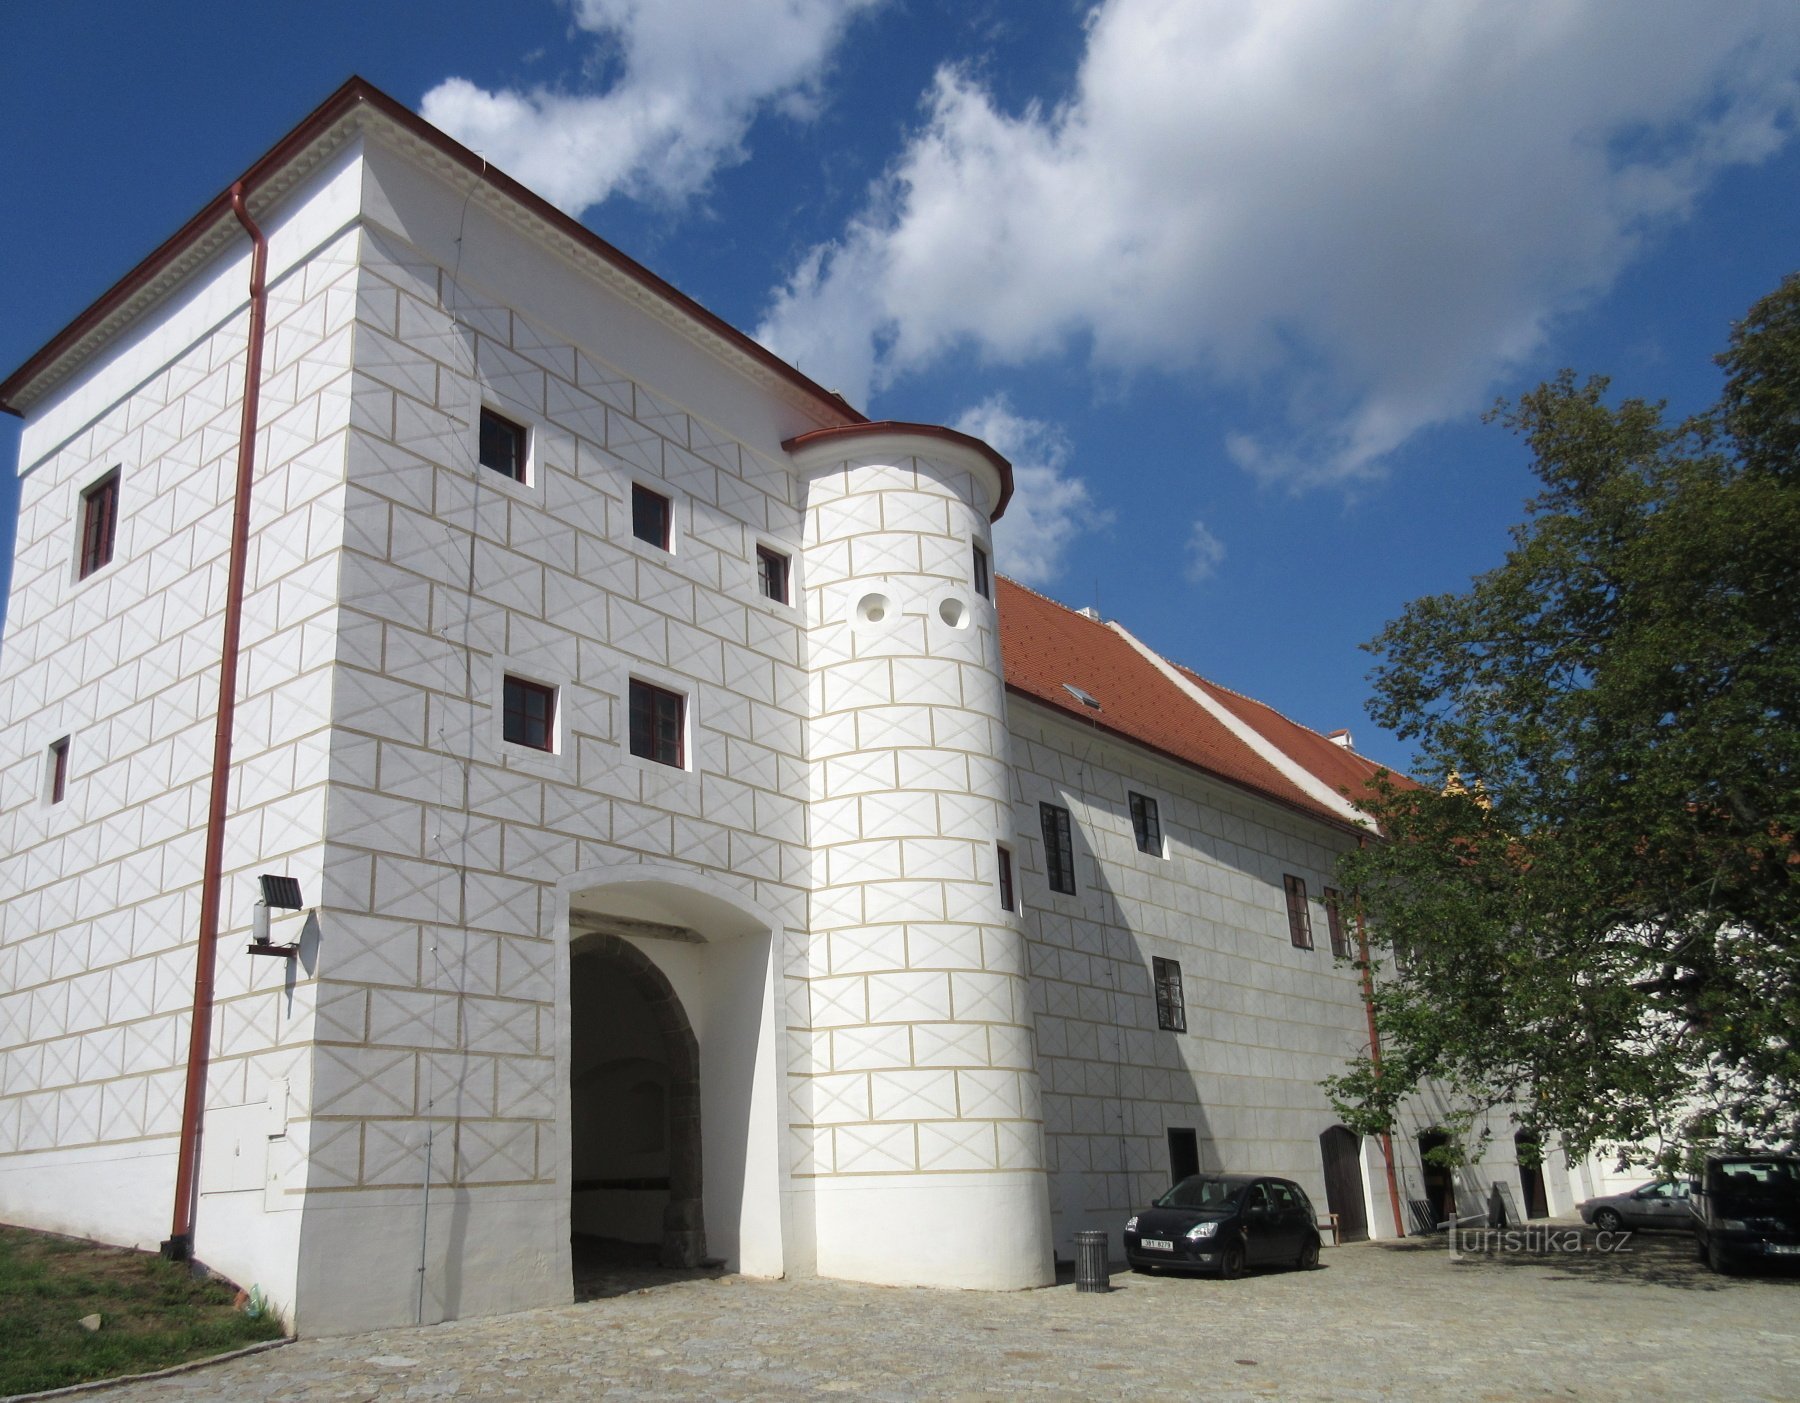 Třebíč - castillo, antiguo monasterio benedictino, ahora museo